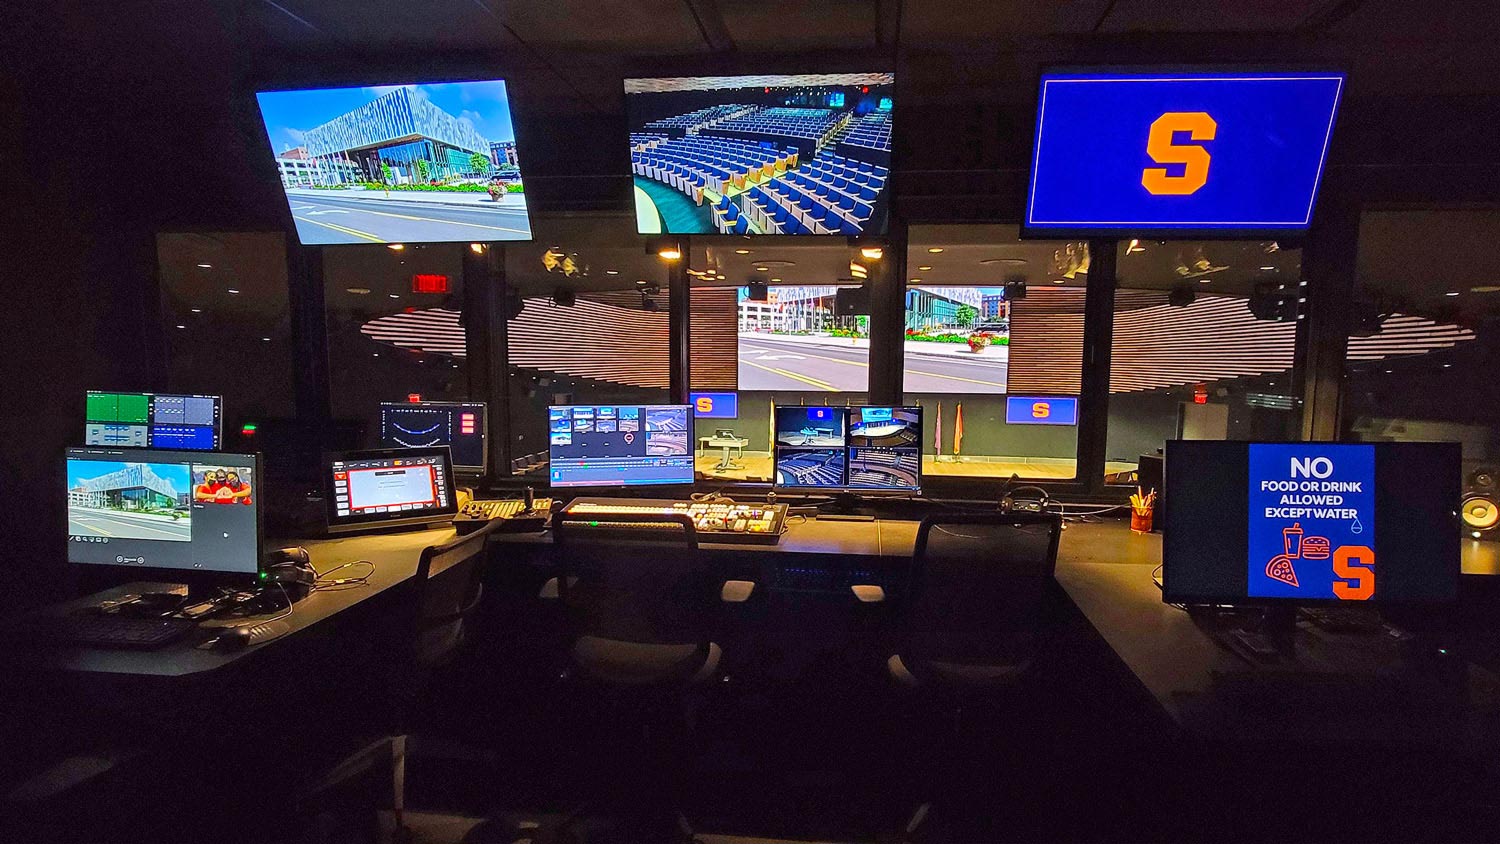 Dans le centre de contrôle, une rangée de fenêtres associée à plusieurs écrans et moniteurs permet à l'opérateur système de réagir rapidement aux signaux de l'enseignant ou du présentateur.